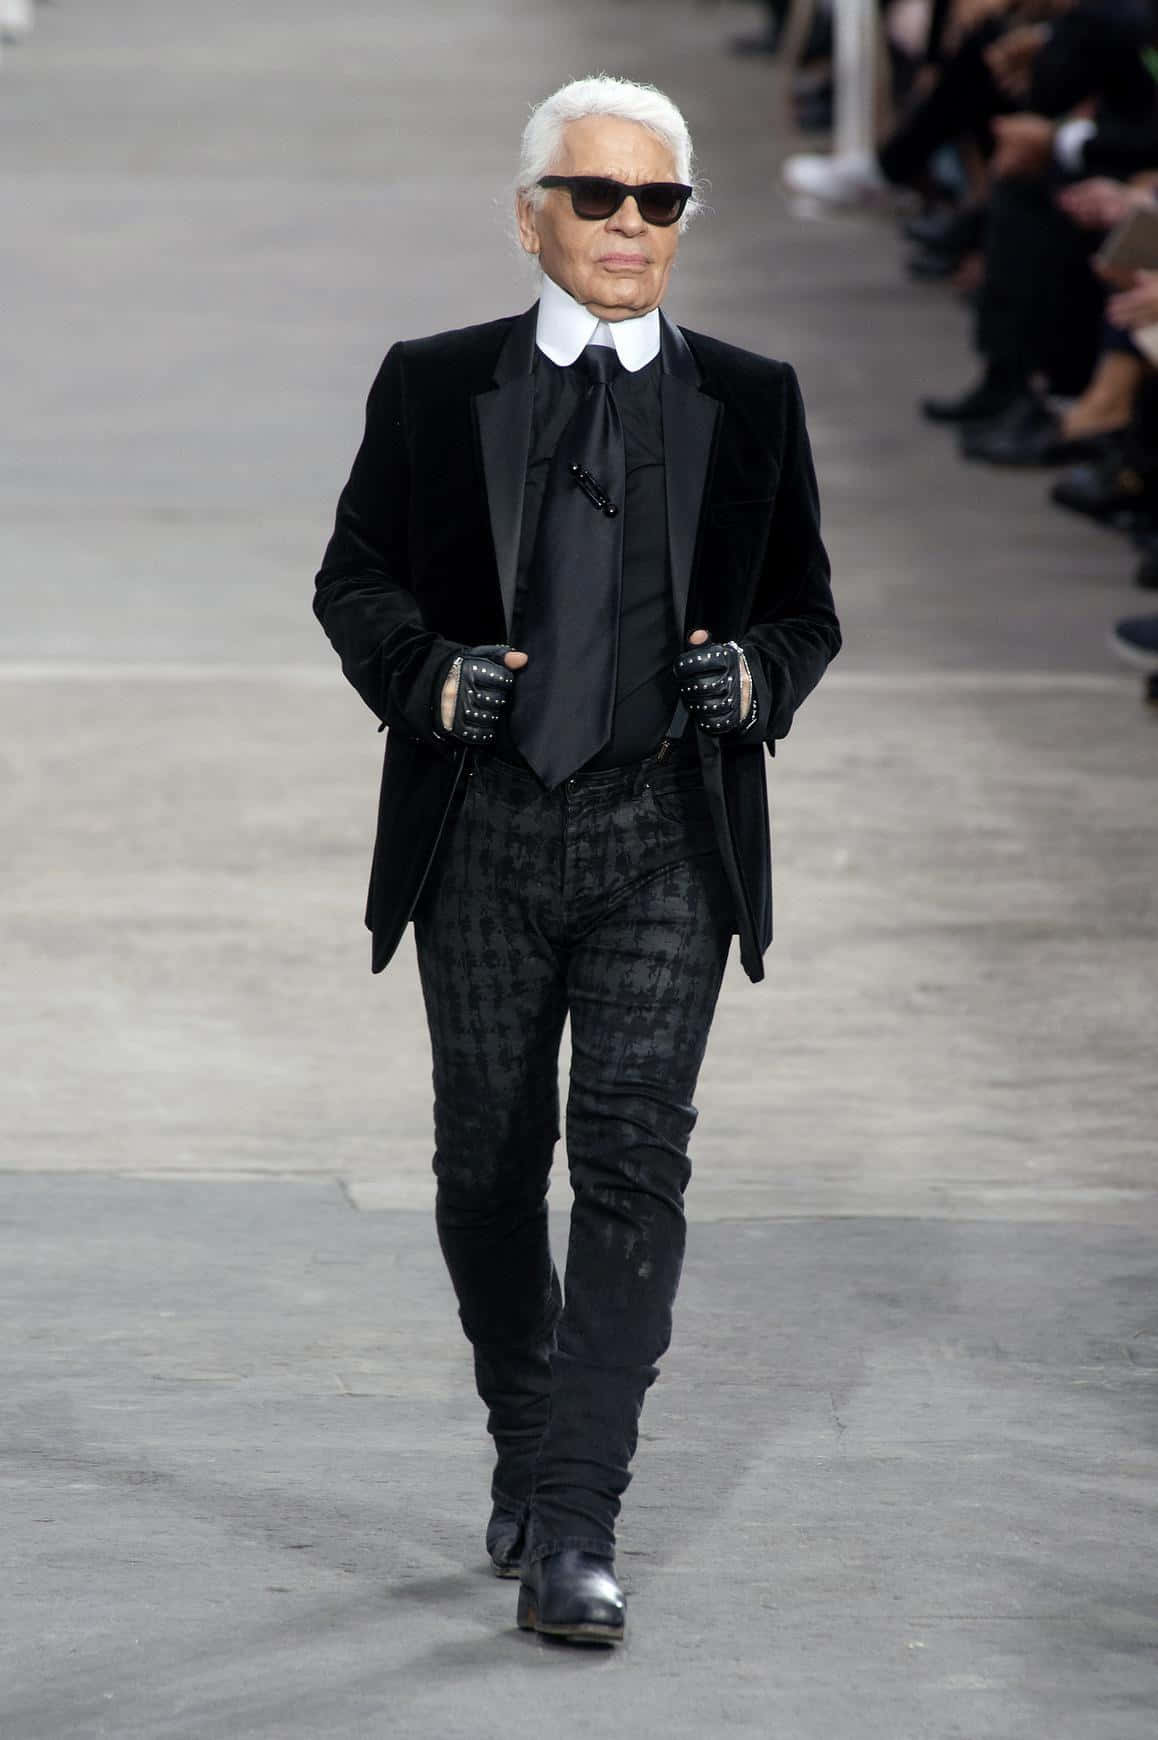 Karl Lagerfeld i sine ikoniske mørke briller og fingerløse handsker dekorerer denne stilfulde tapet. Wallpaper